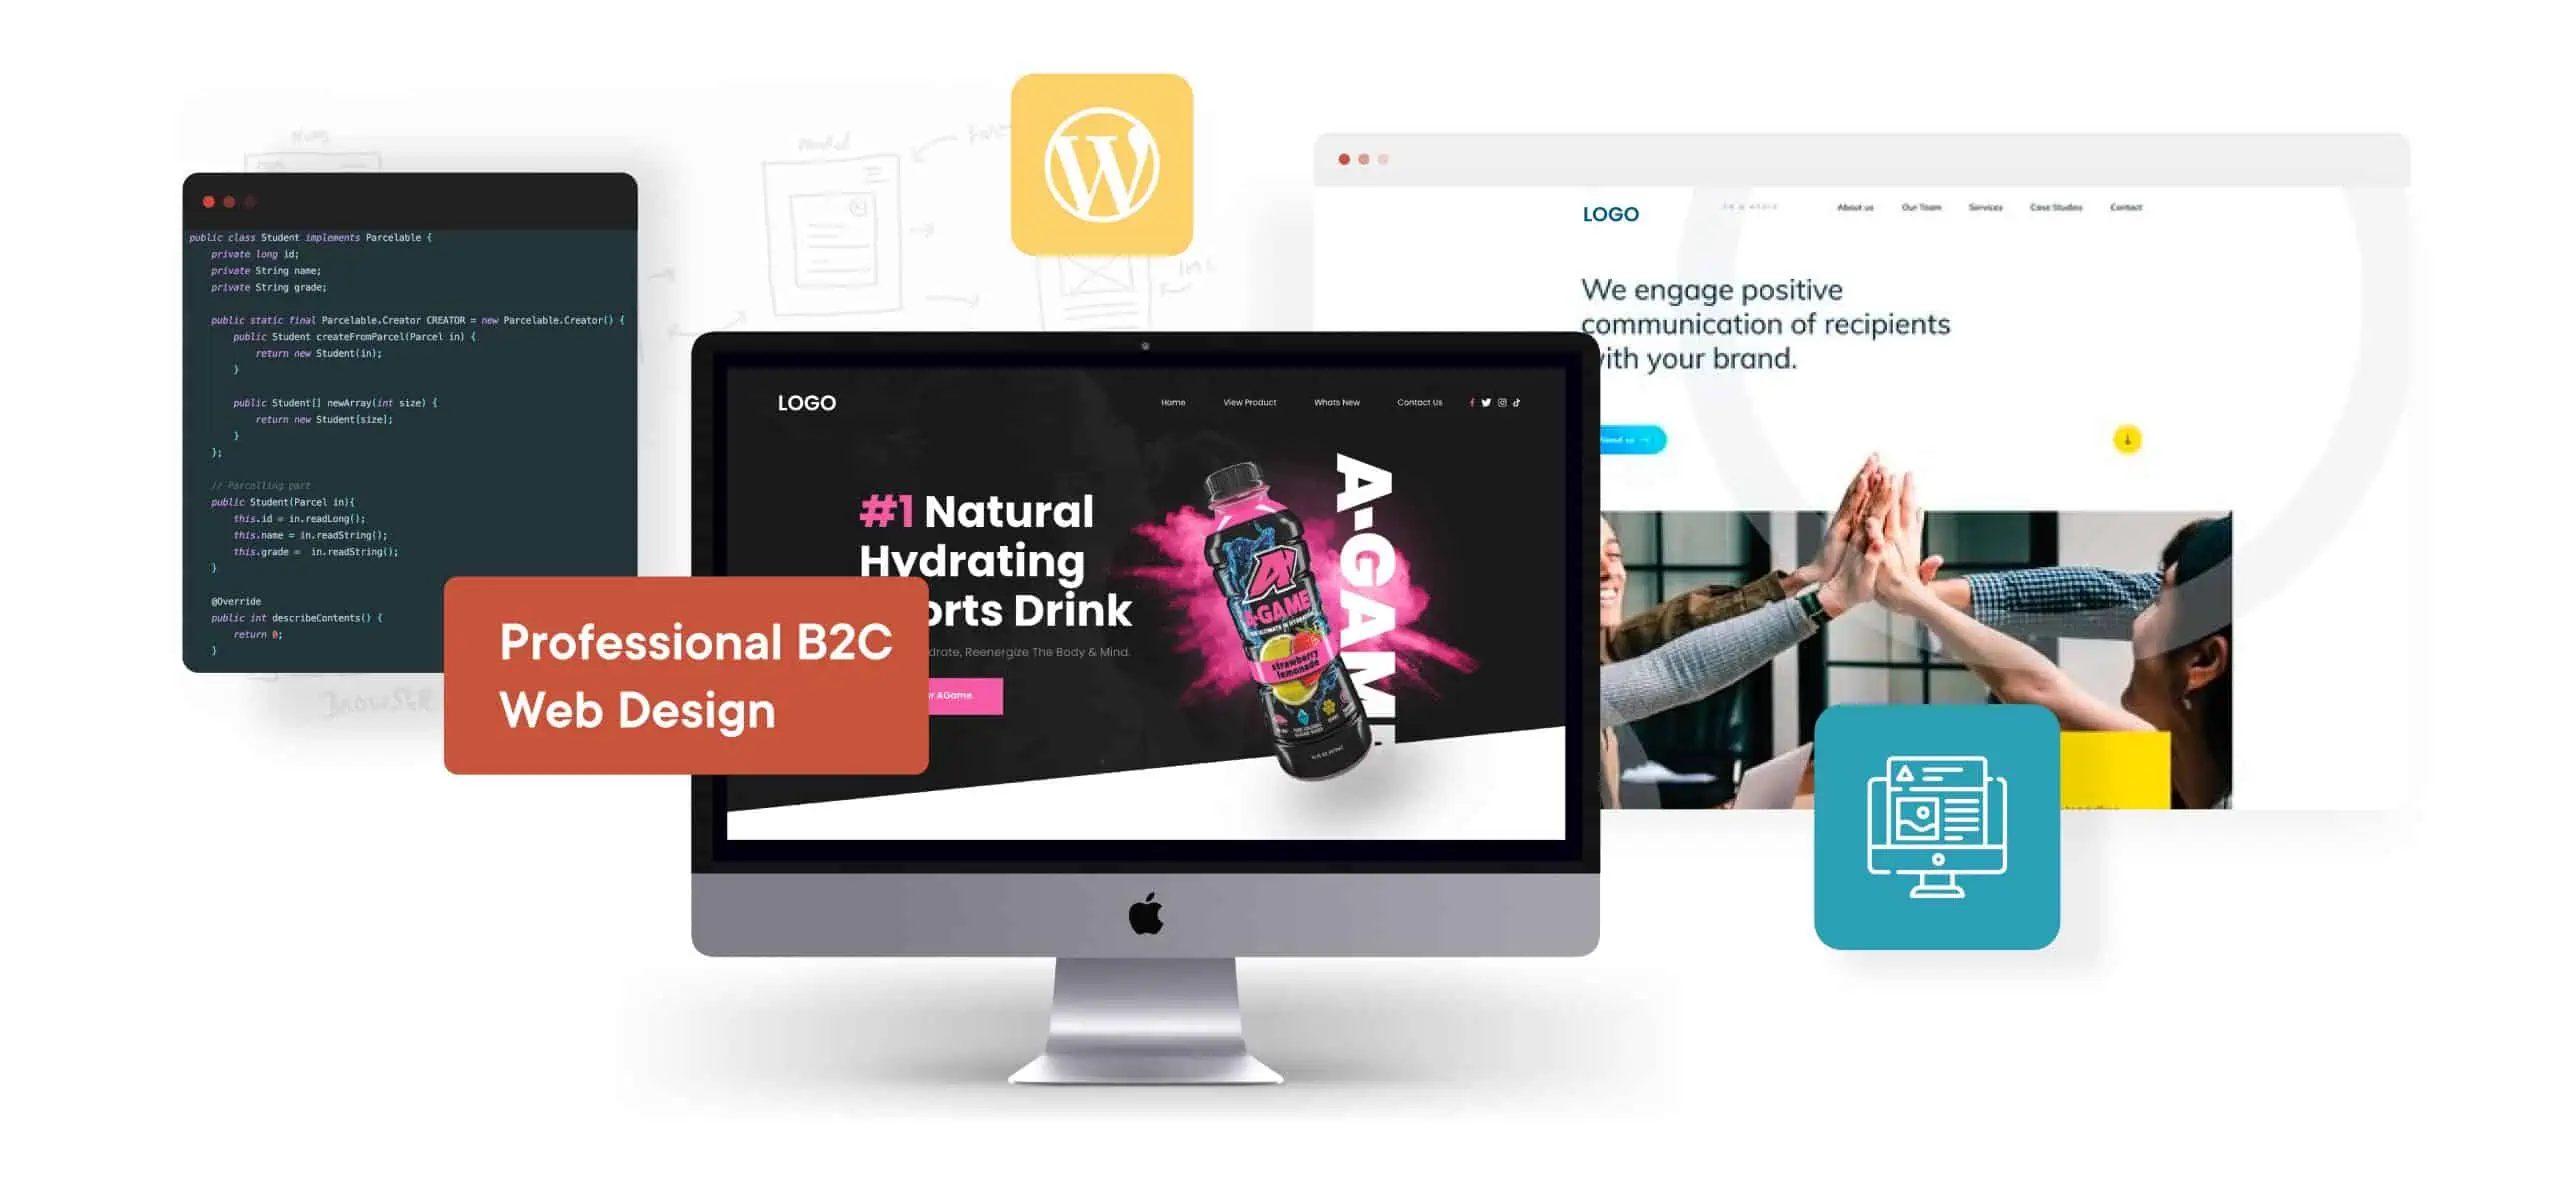 Professional B2C Web Design | WPXStudios